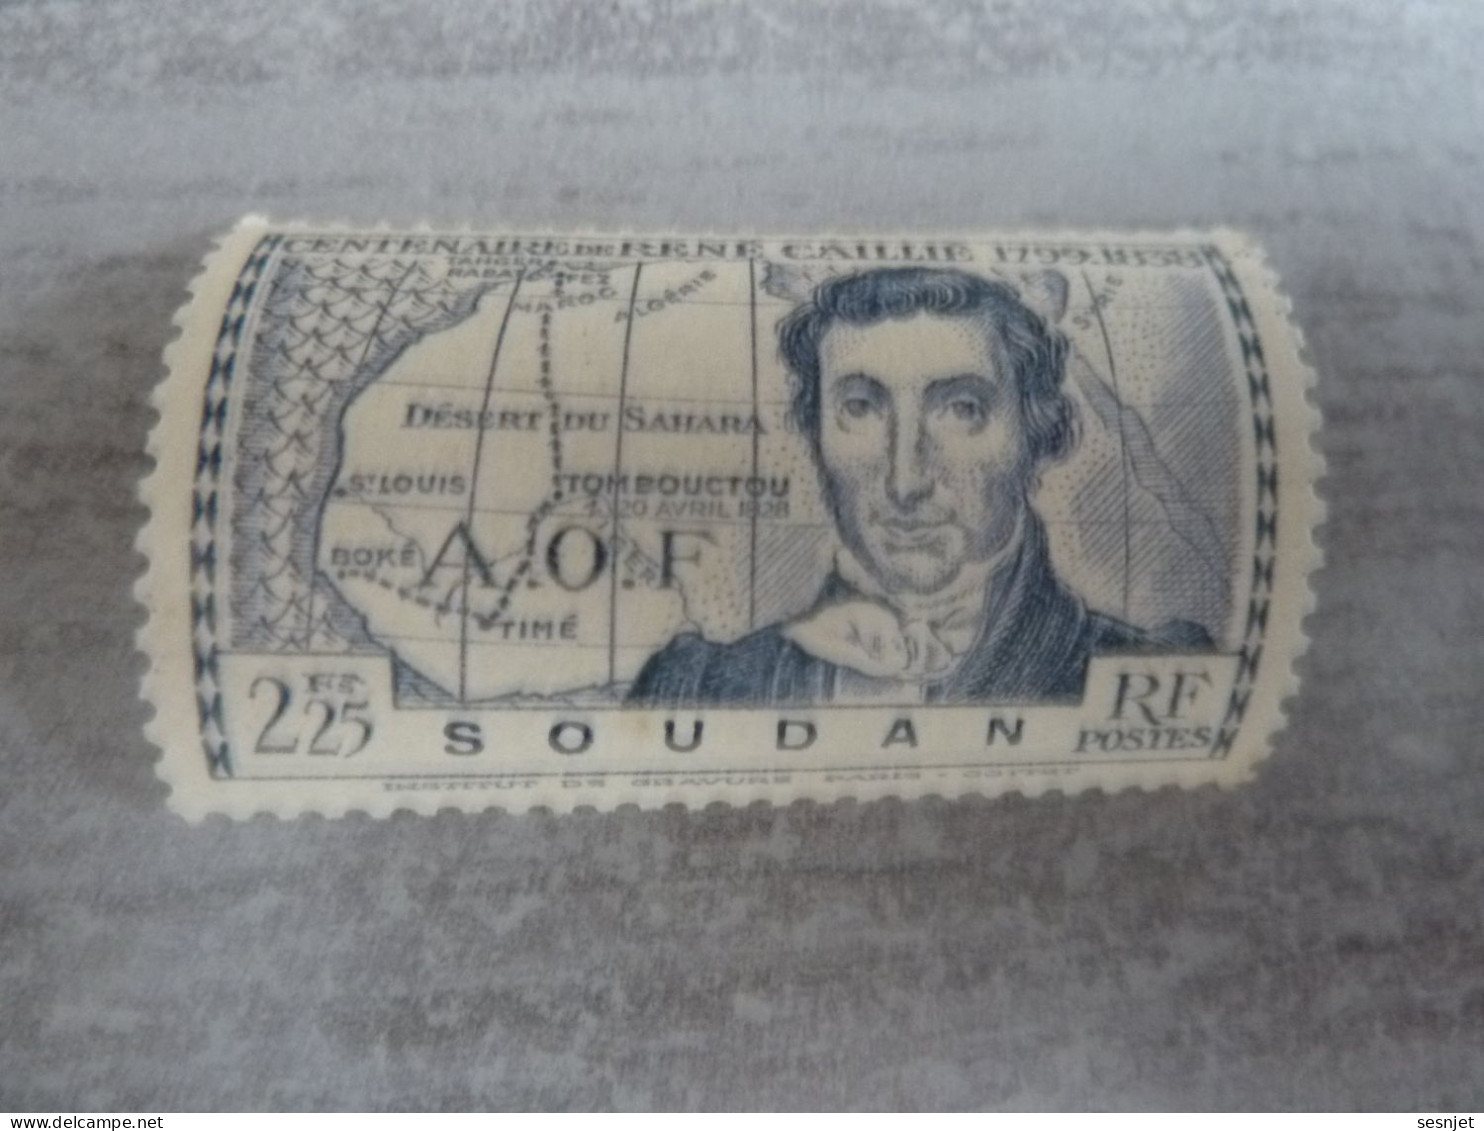 René Caillié (1709-1838) - A.o.f. - Soudan - 2f.25 - Yt 102 - Outremer - Neuf Sans Trace De Charnière - Année 1939 - - Unused Stamps